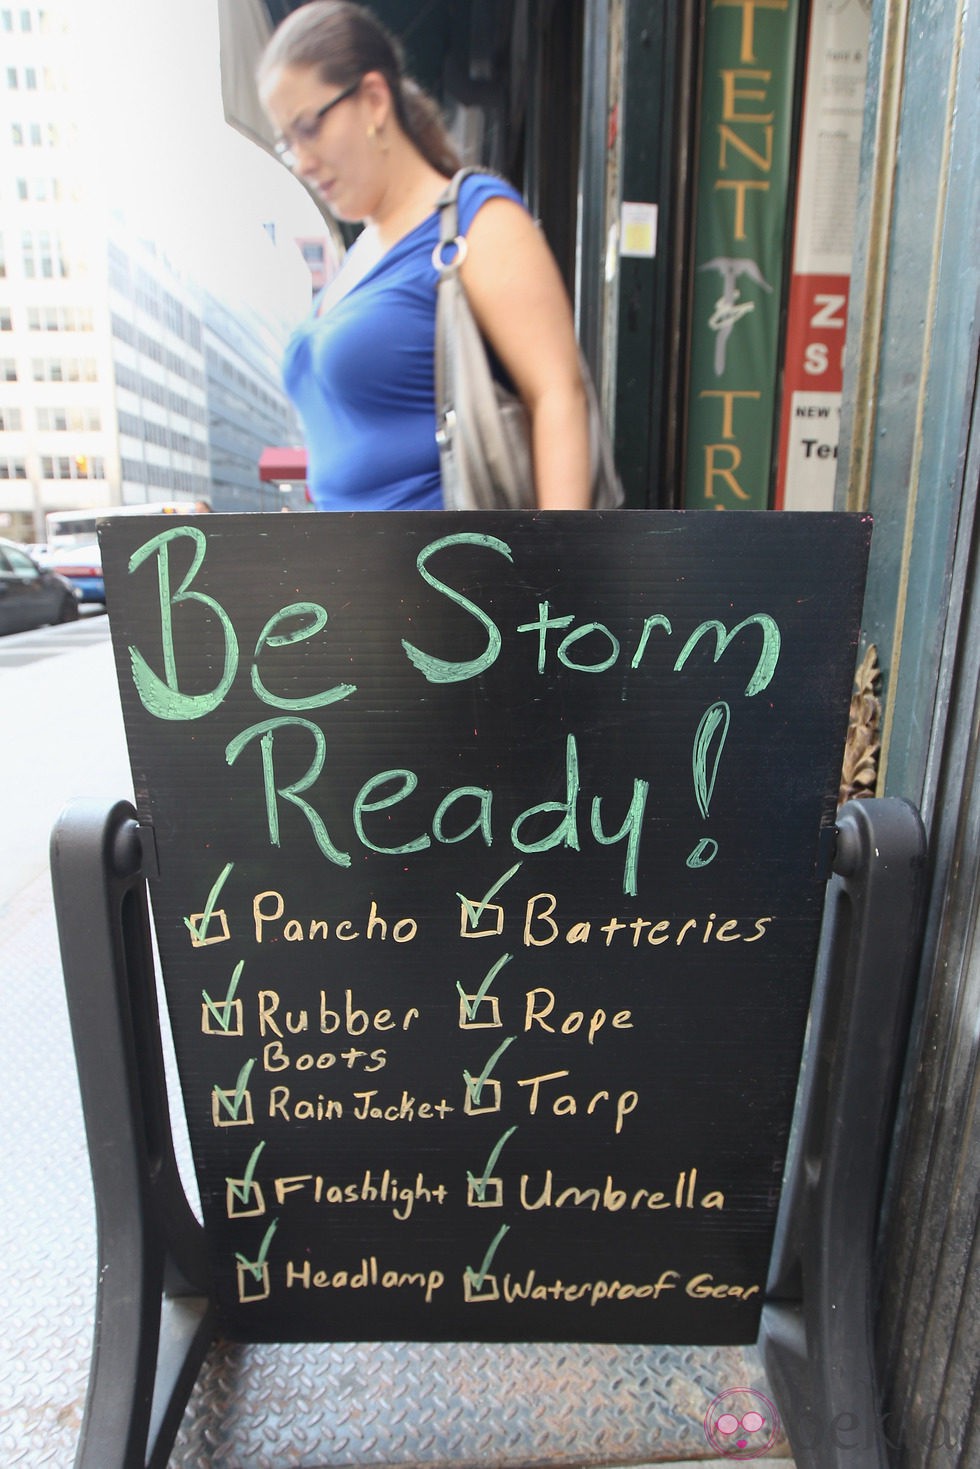 Nueva York se encuentra en alerta ante la llegada del huracán Irene